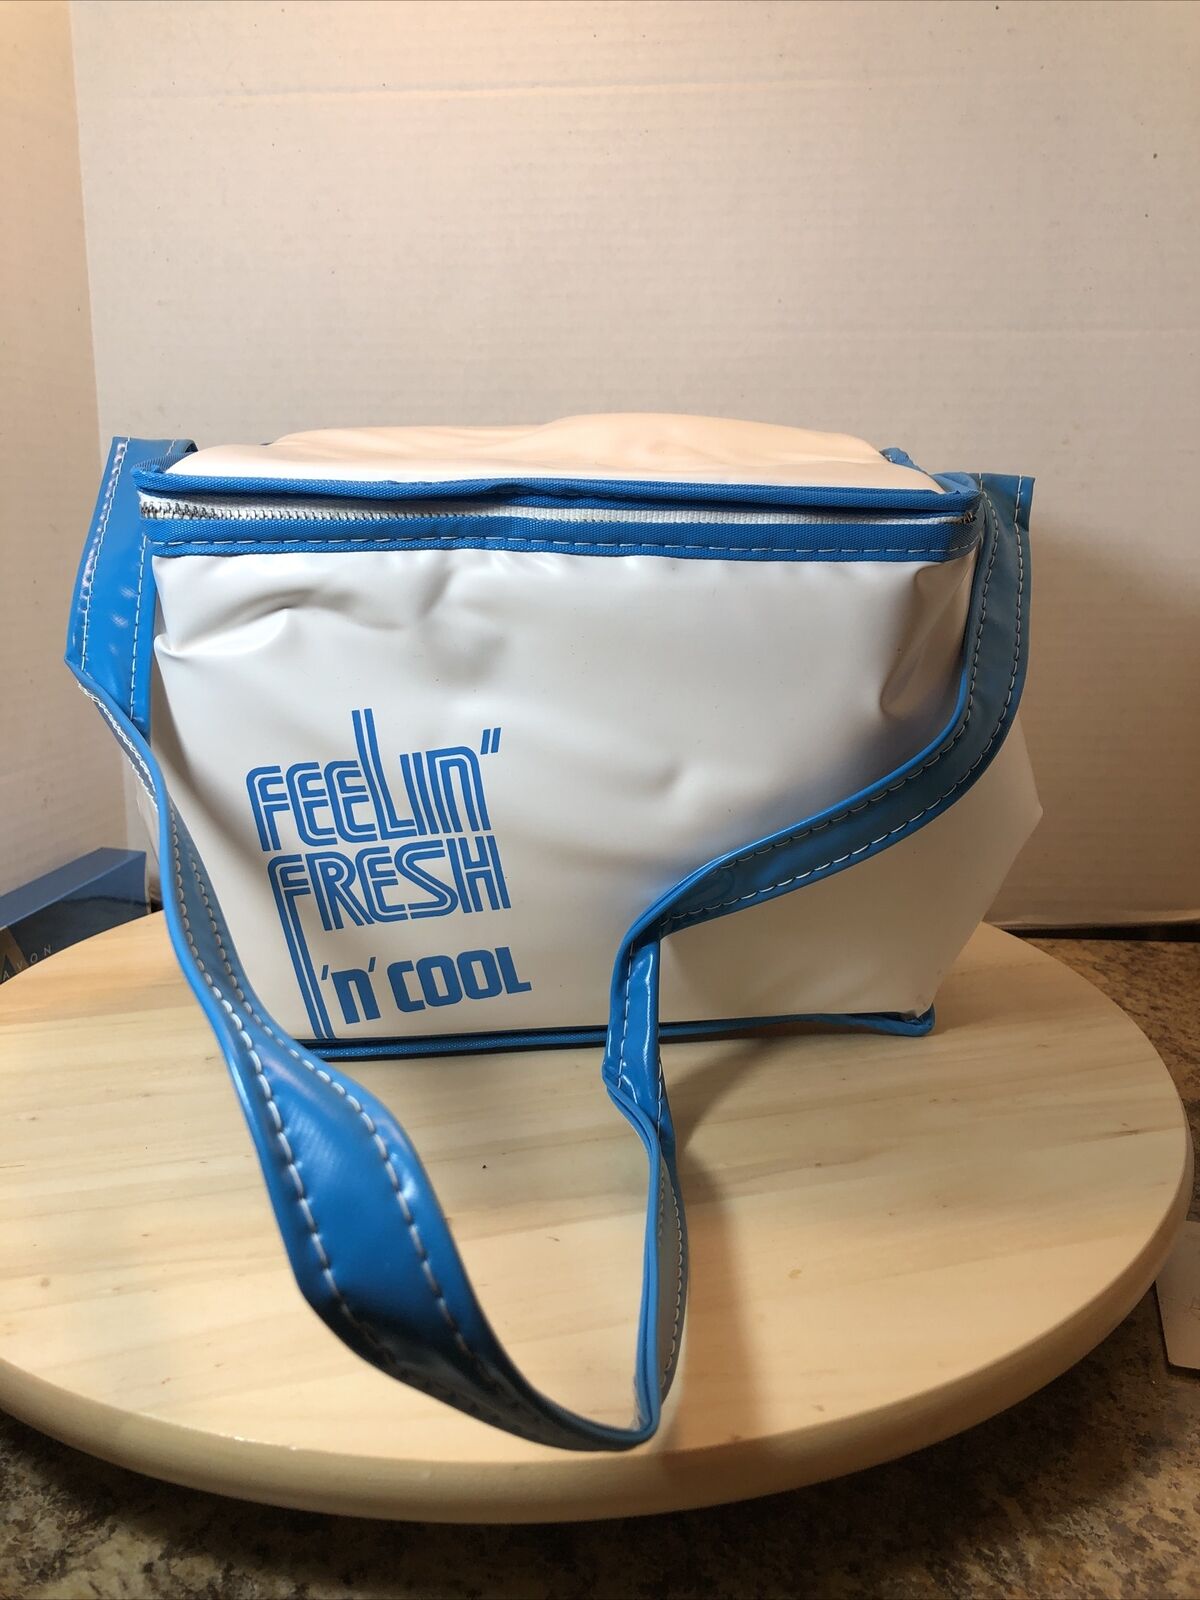 Avon Feelin' Fresh n Cool Insulated Lunch Box Bag